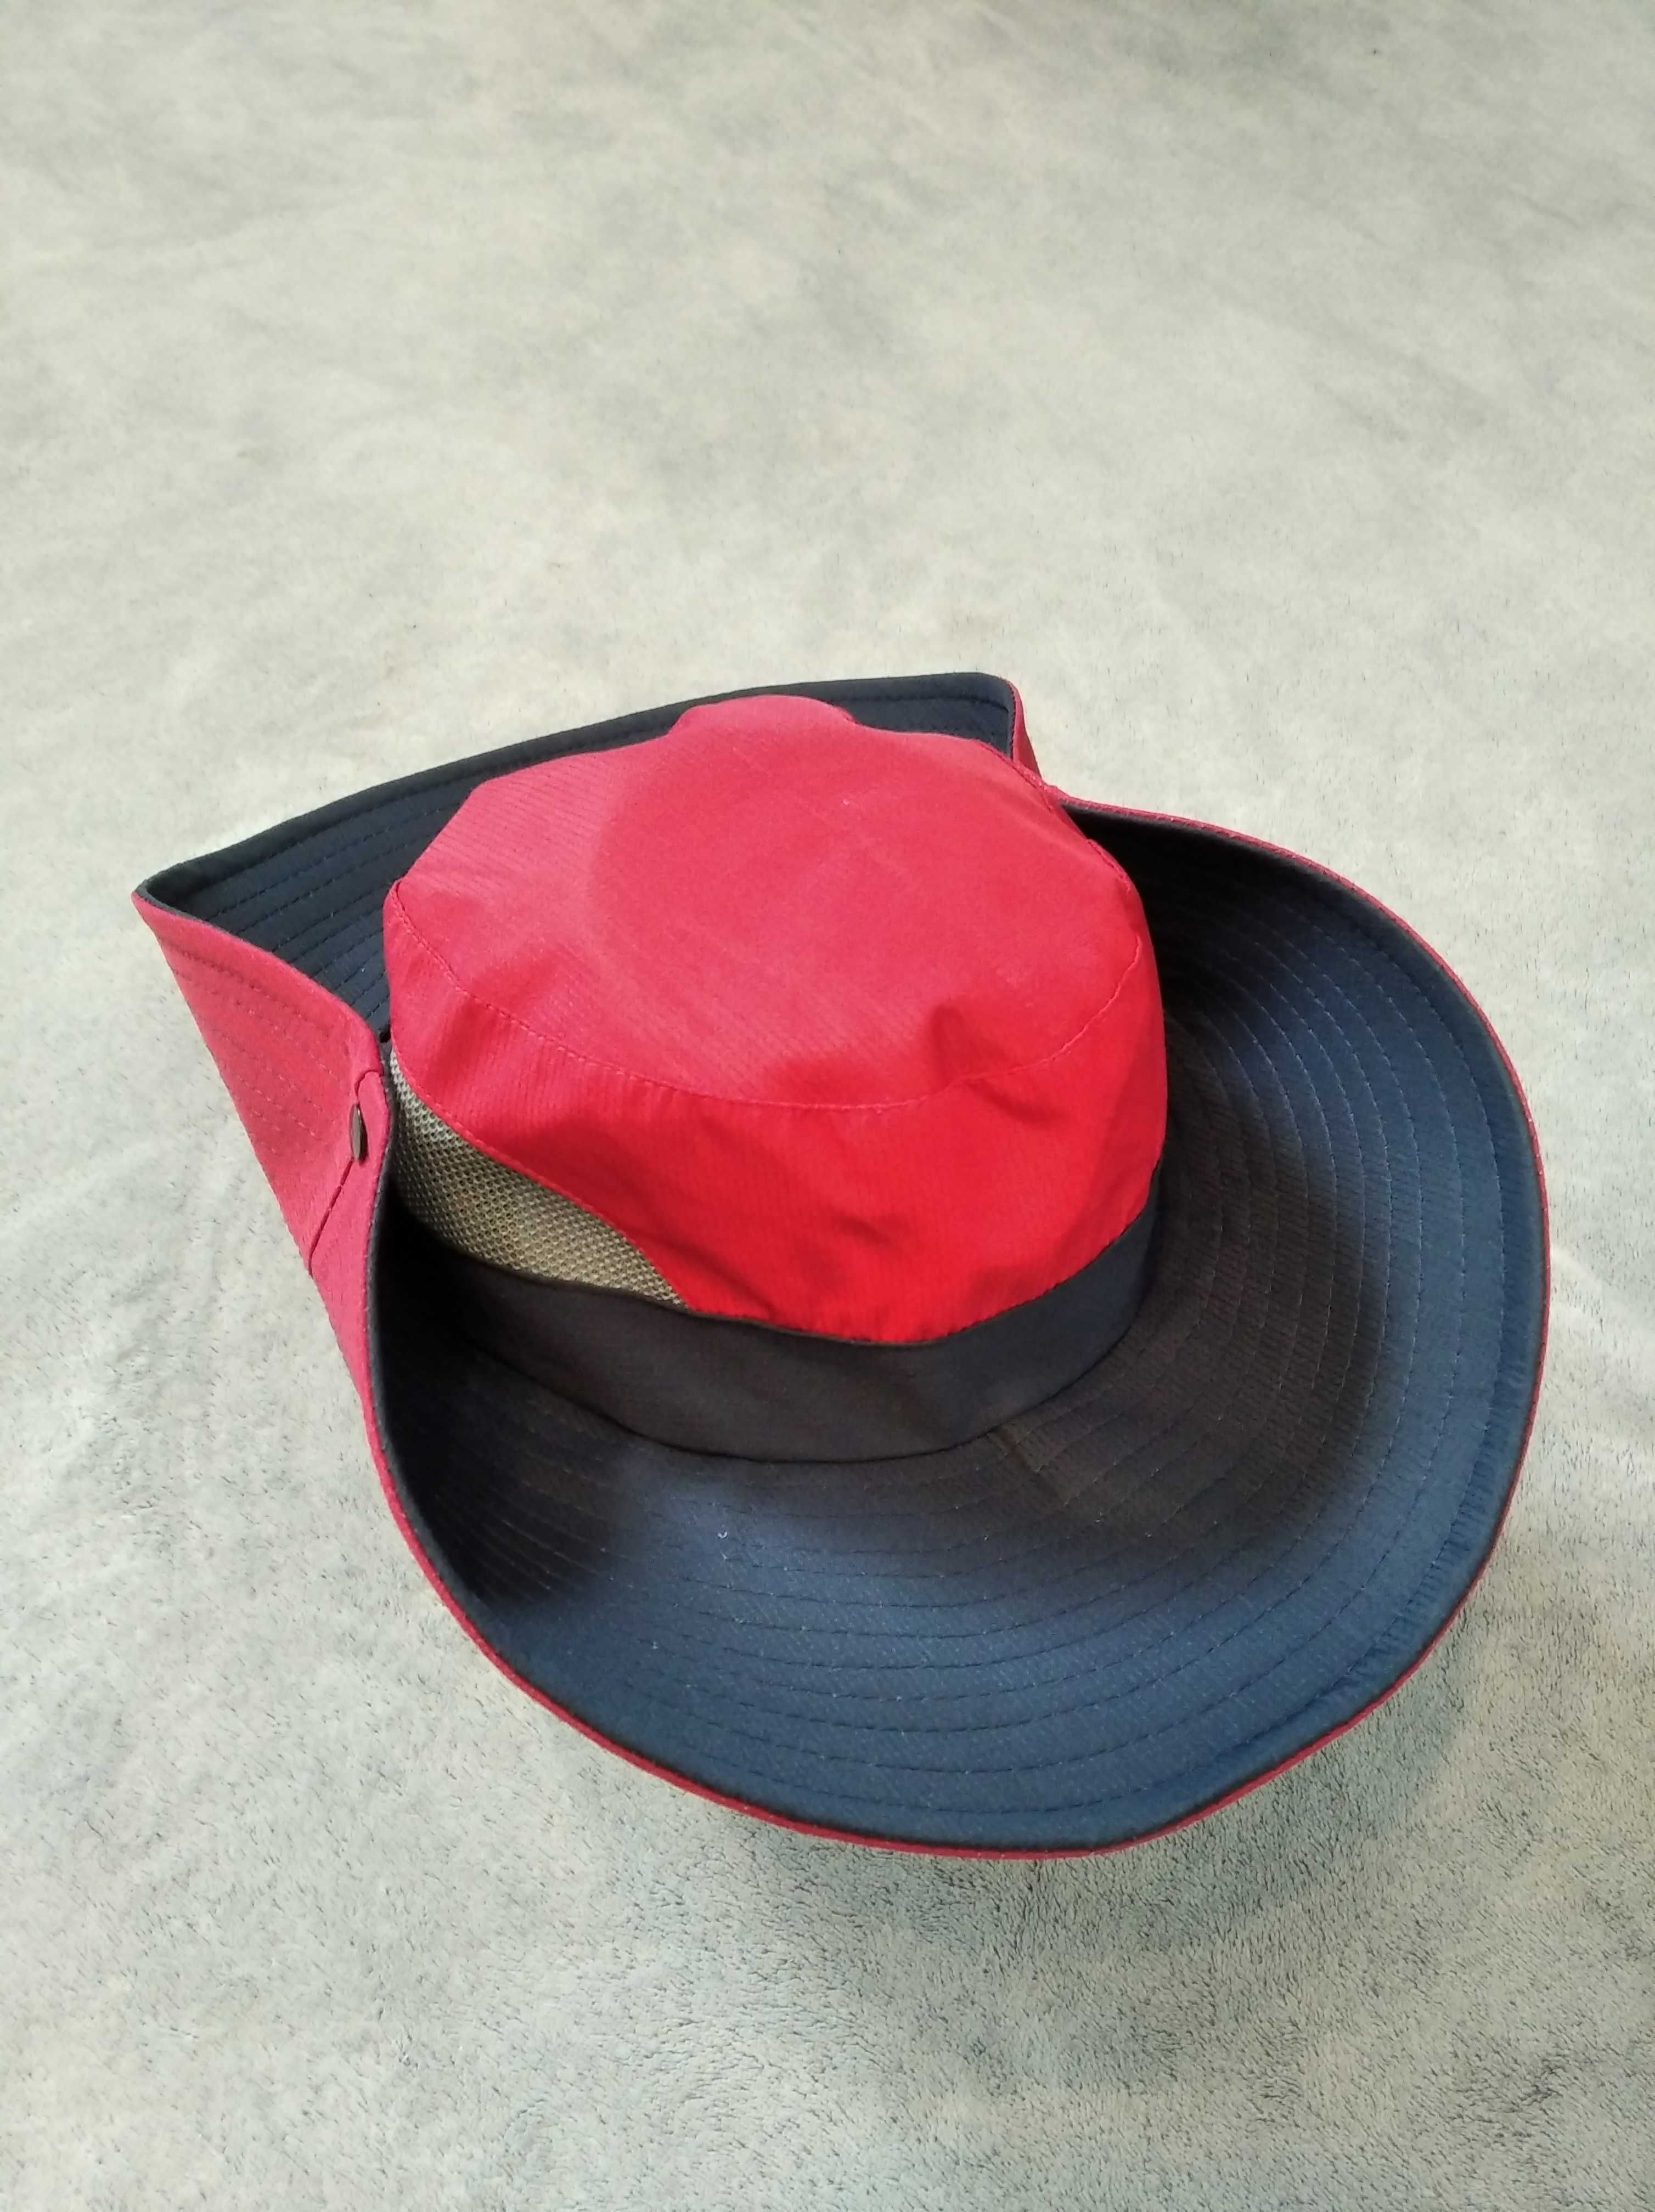 Damski kapelusz trekkingowy 54 - 56 cm